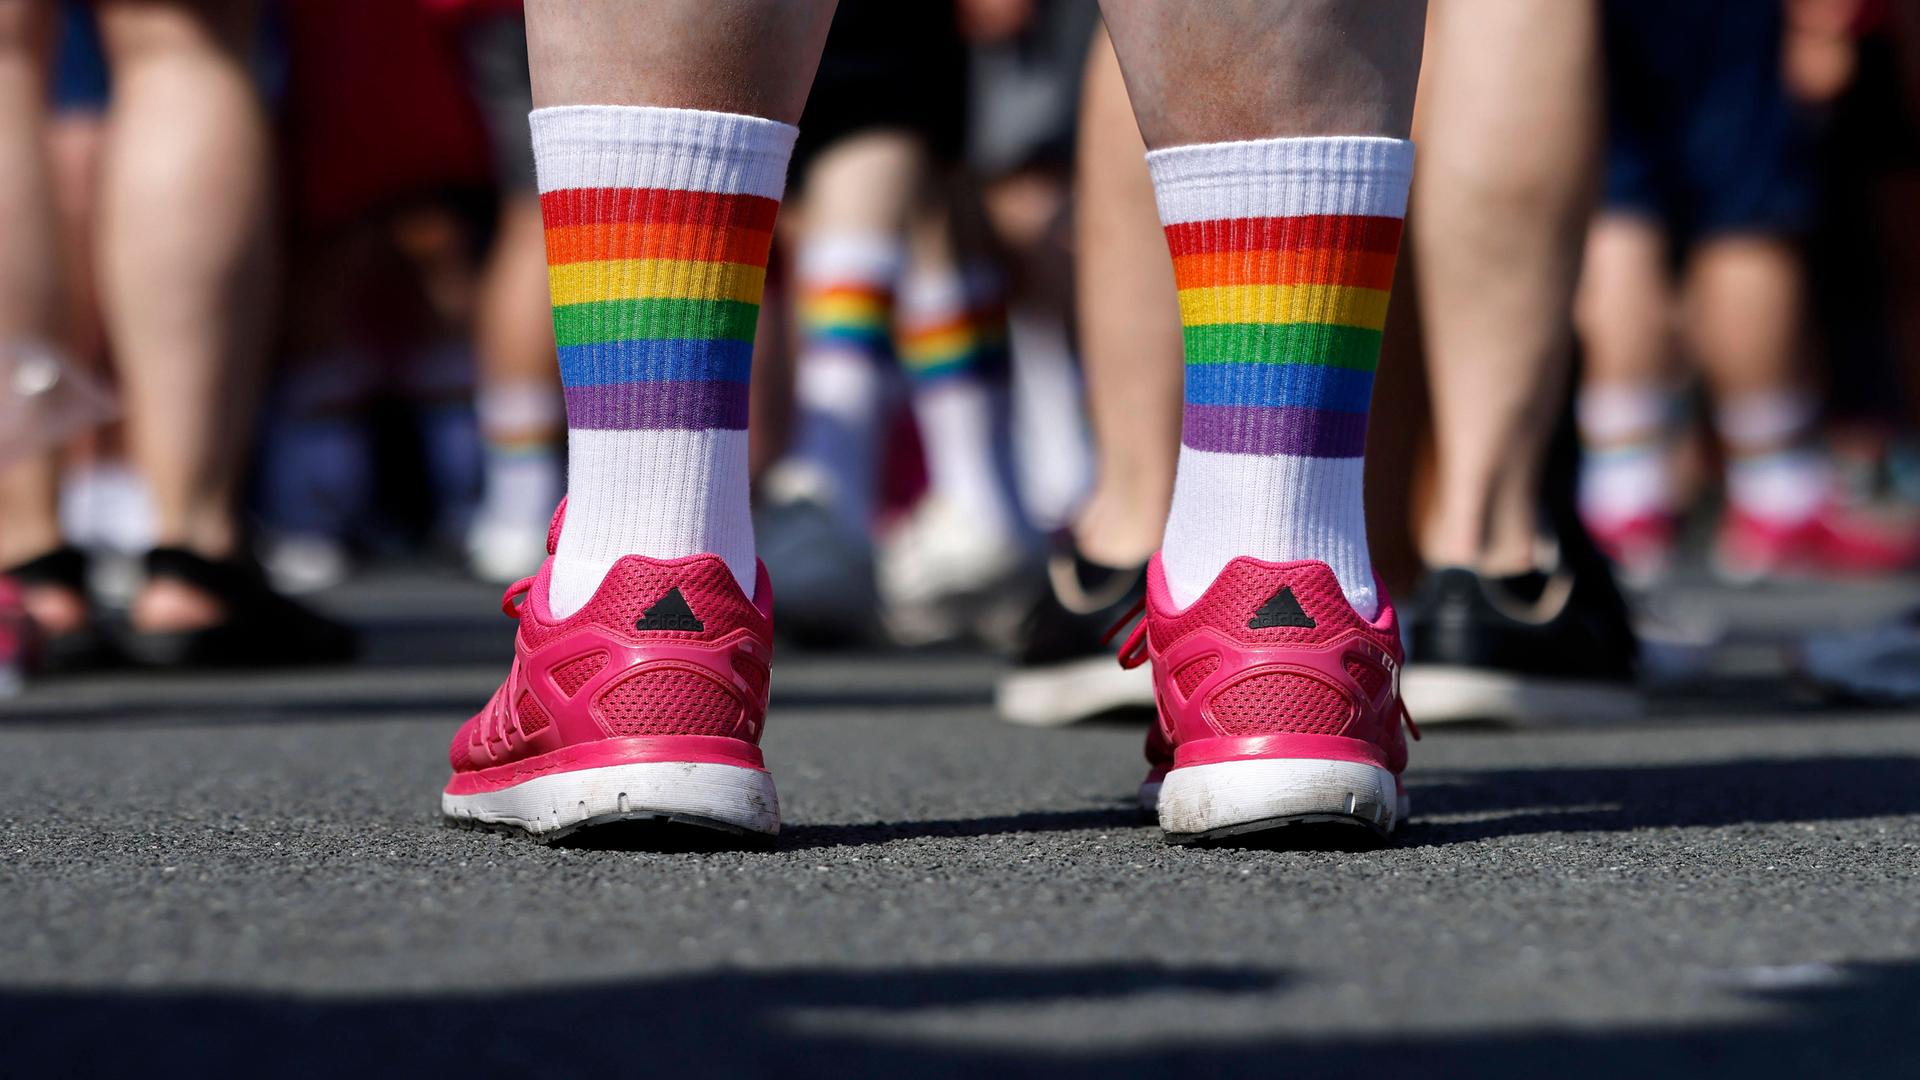 Das Bild zeigt die Unterschenkel eines Teilnehmers mit roten Schuhen und Regenbogen-Socken.